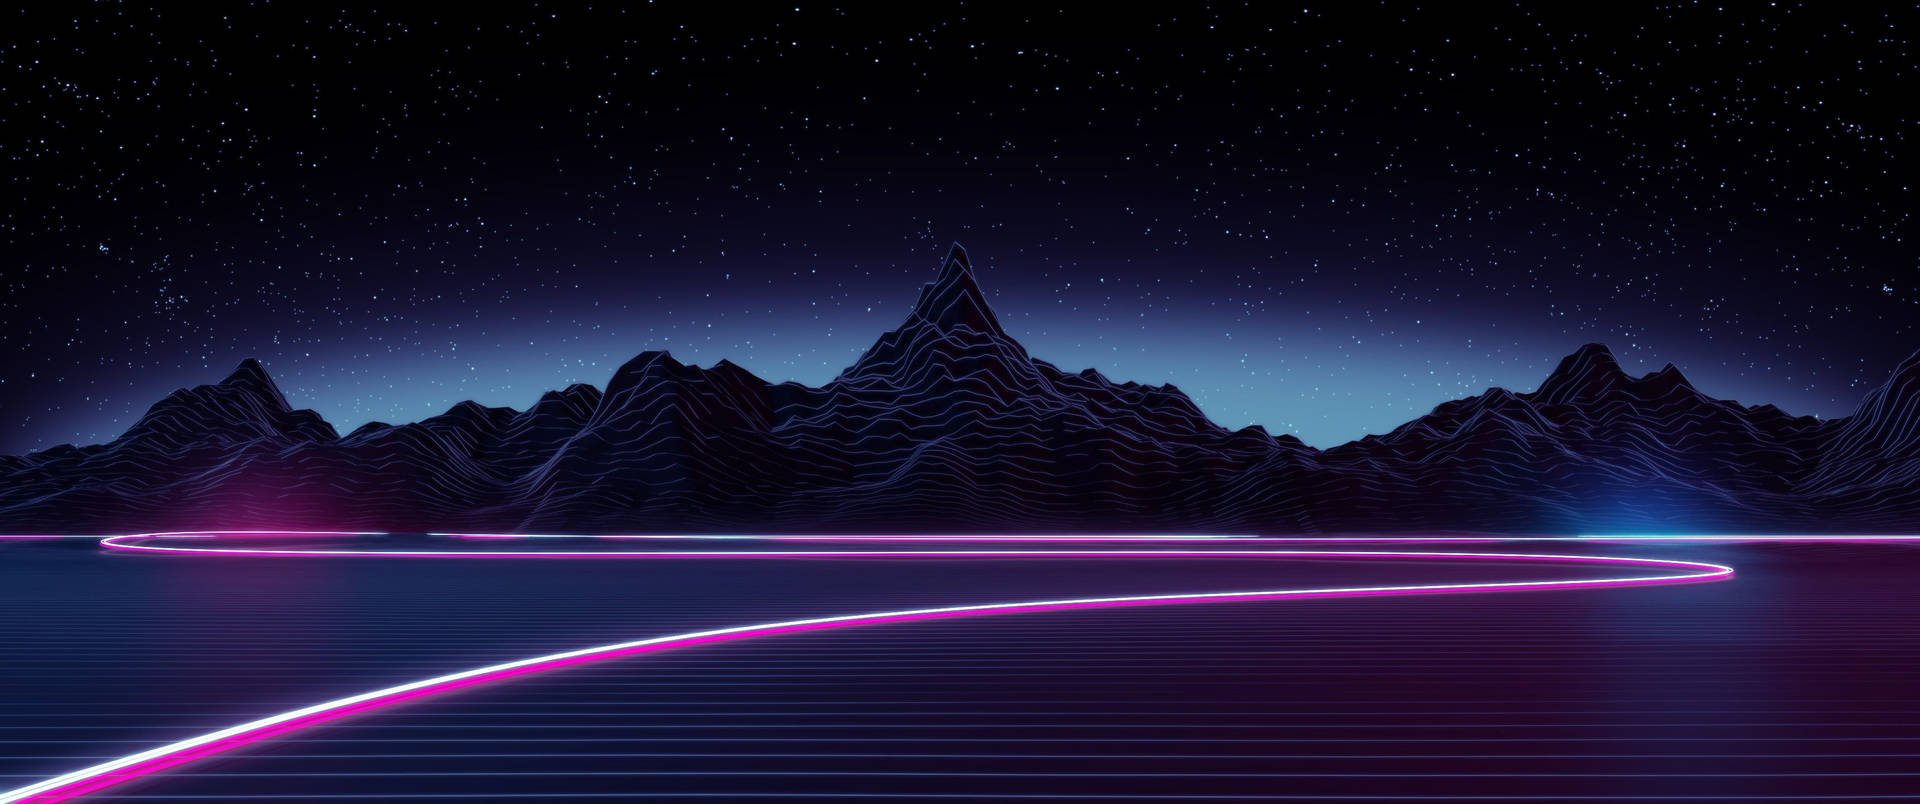 Dark Synthwave Art Background